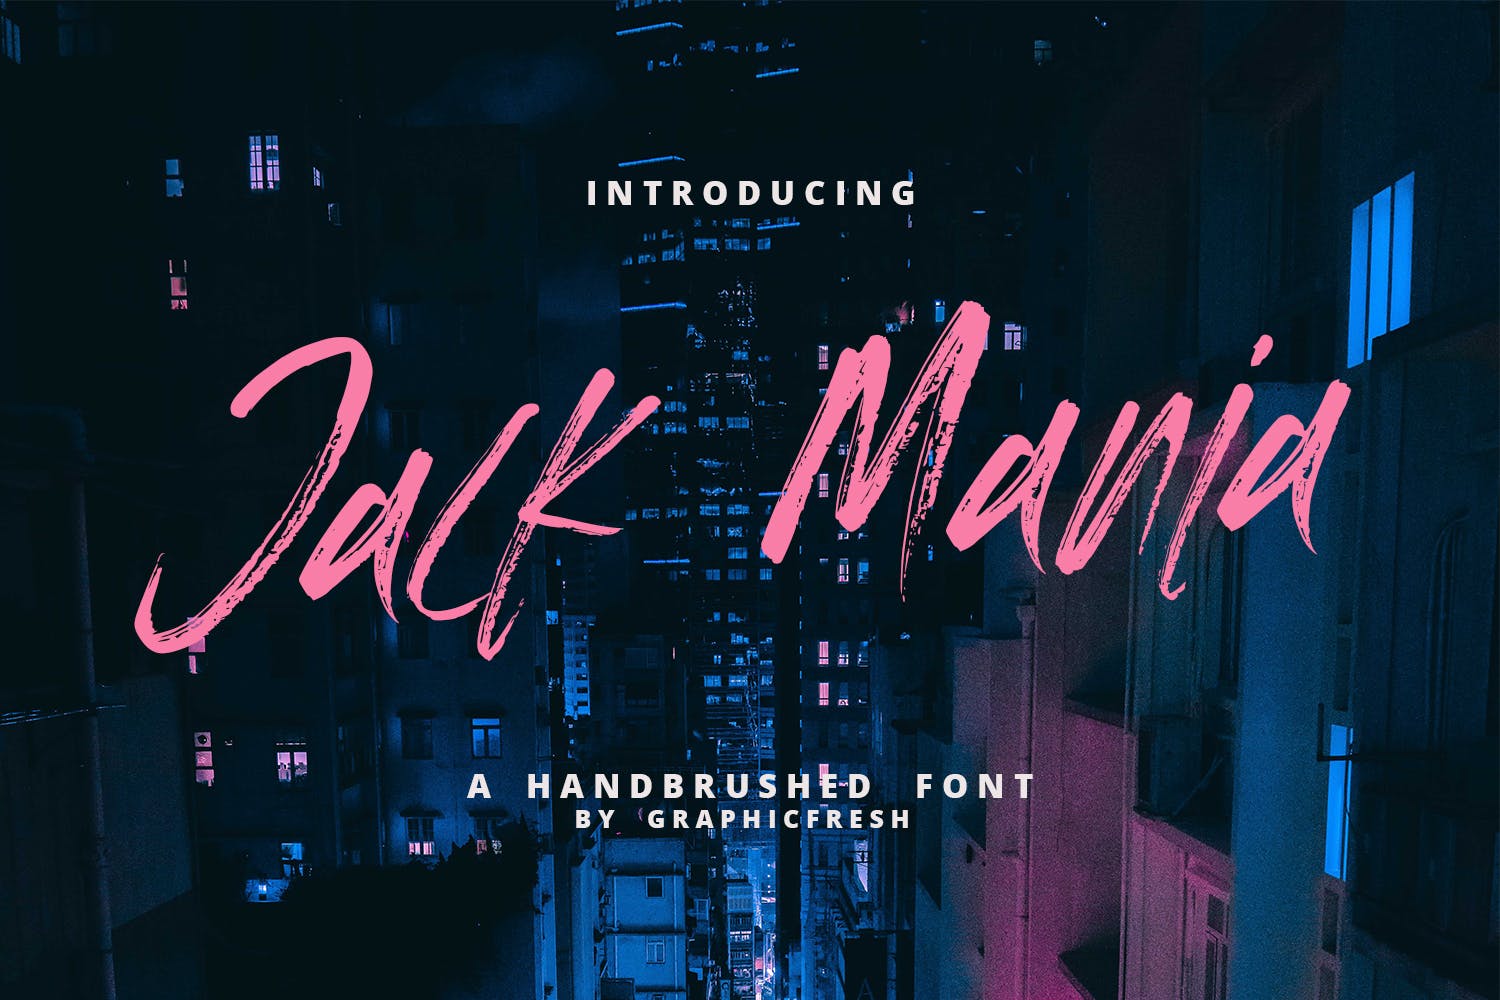 手工绘制英文画笔笔刷书法字体 The JACK MANIA Brush Font插图